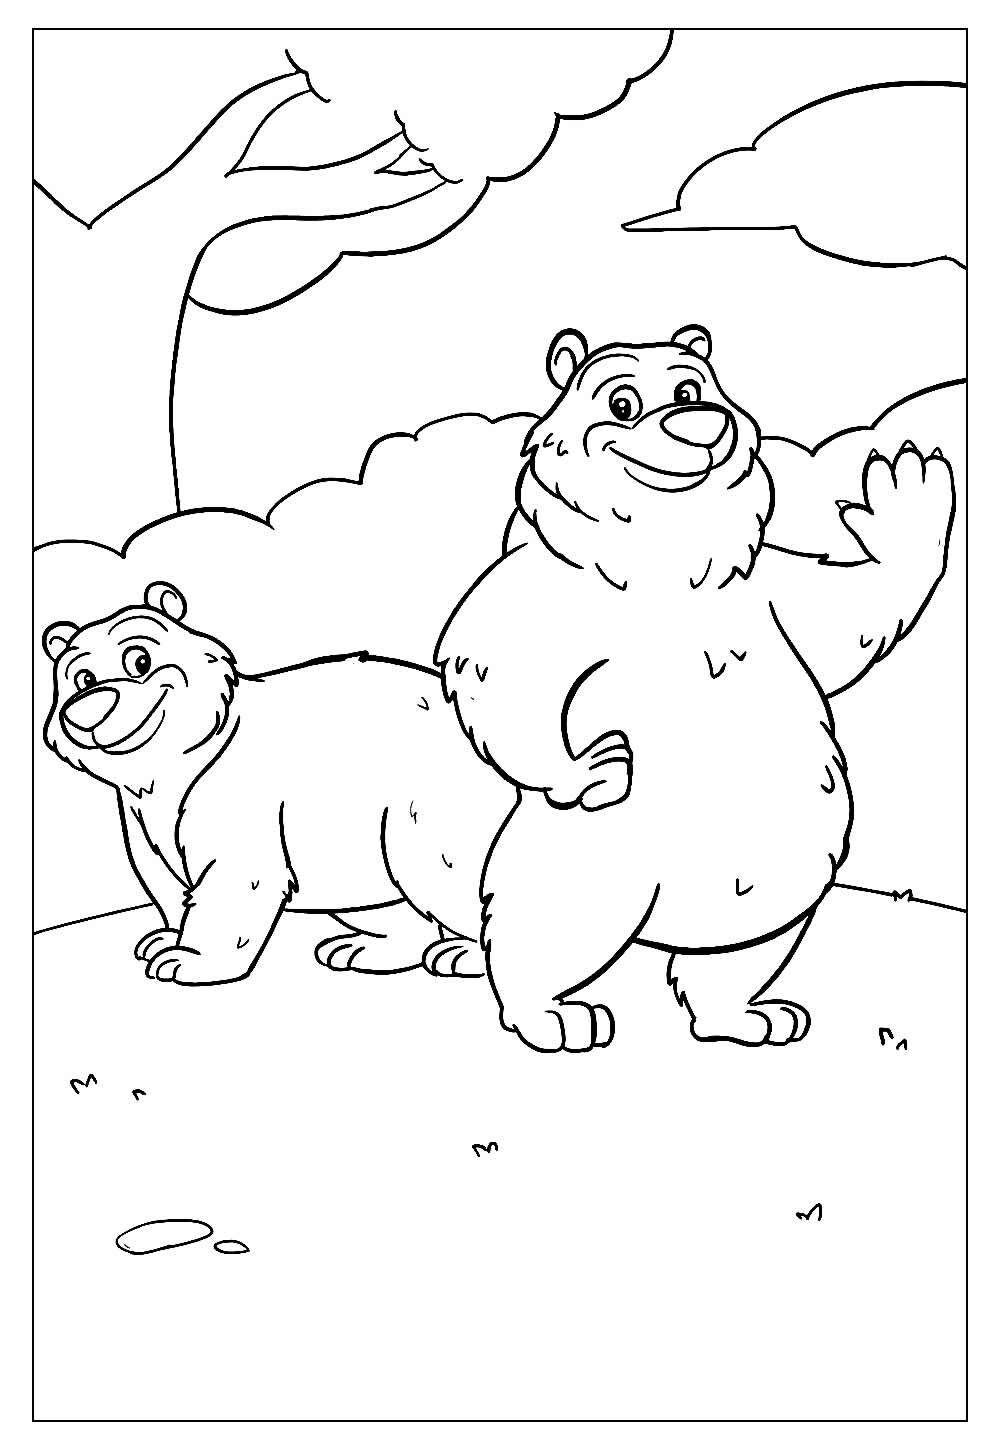 Imprimir desenho de ursos para colorir